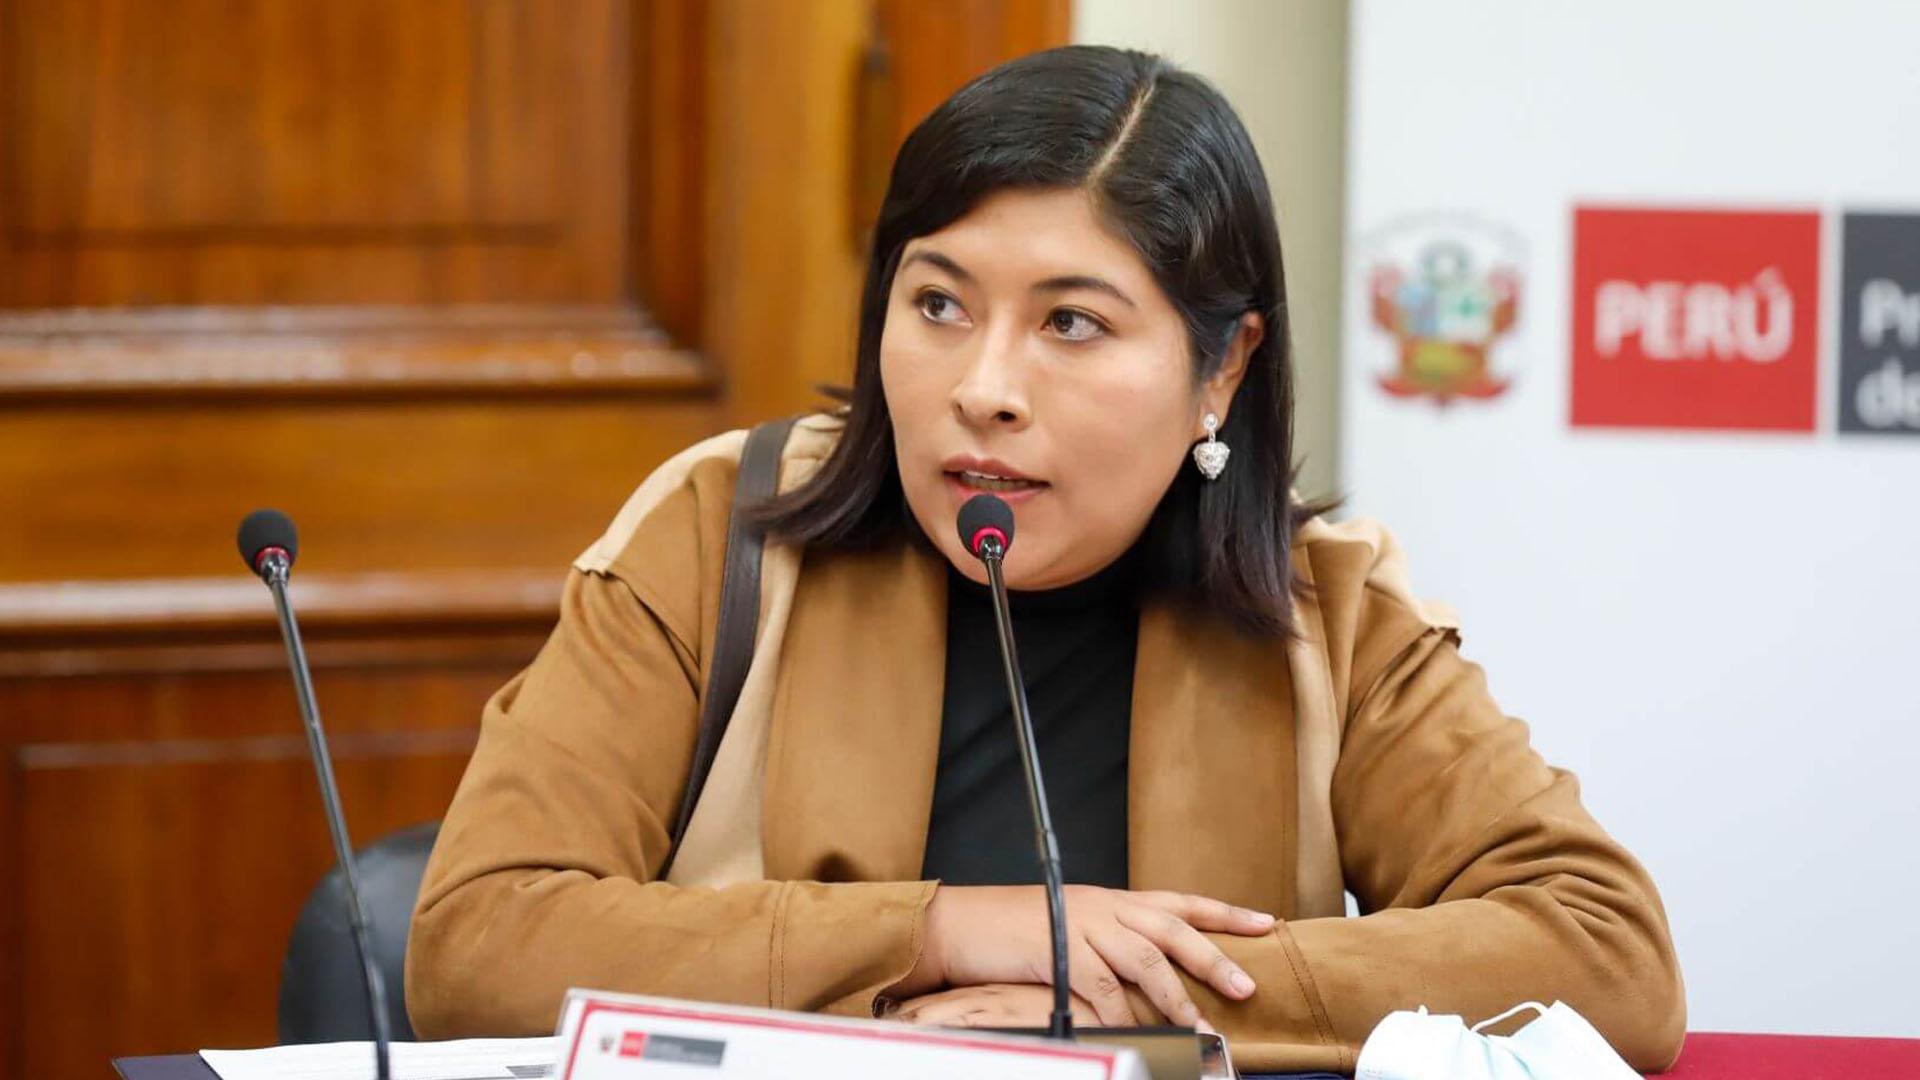 Betssy Chávez